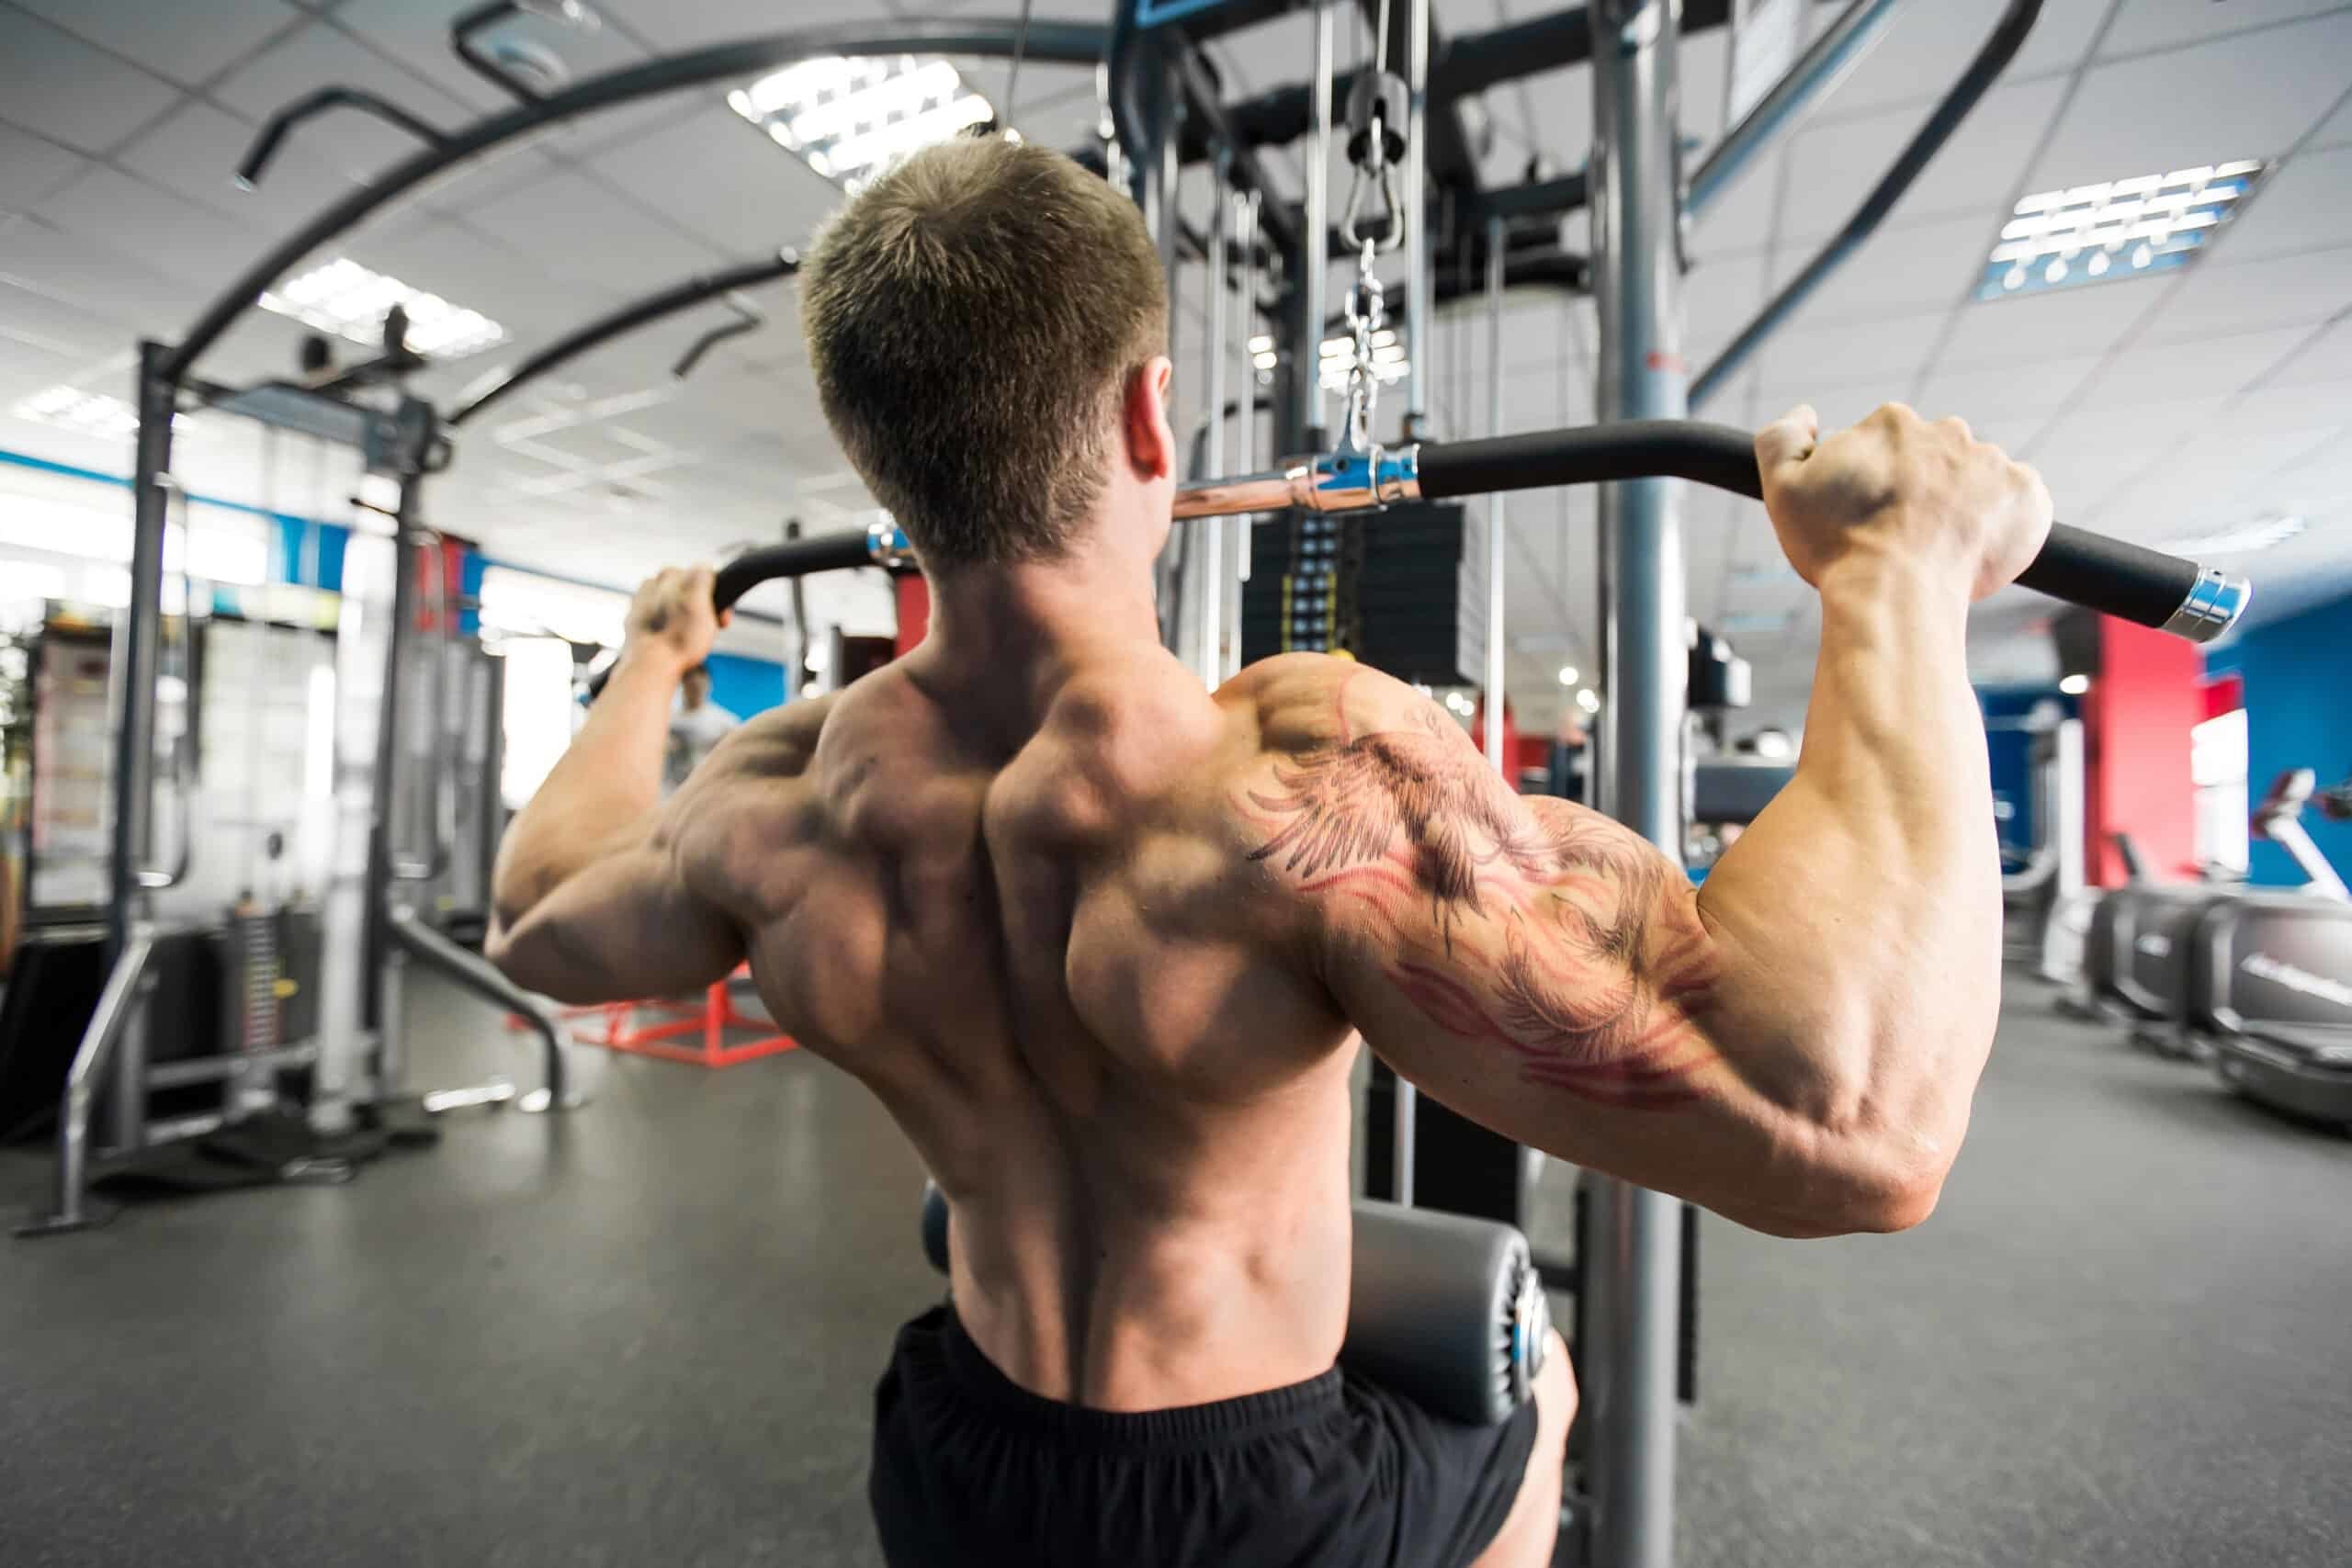 Tập luyện Lat Pulldown giúp tăng cường kích thước và sức mạnh của cơ xô, cơ bắp tay trước, các cơ bắp khác ở phần thân trên.